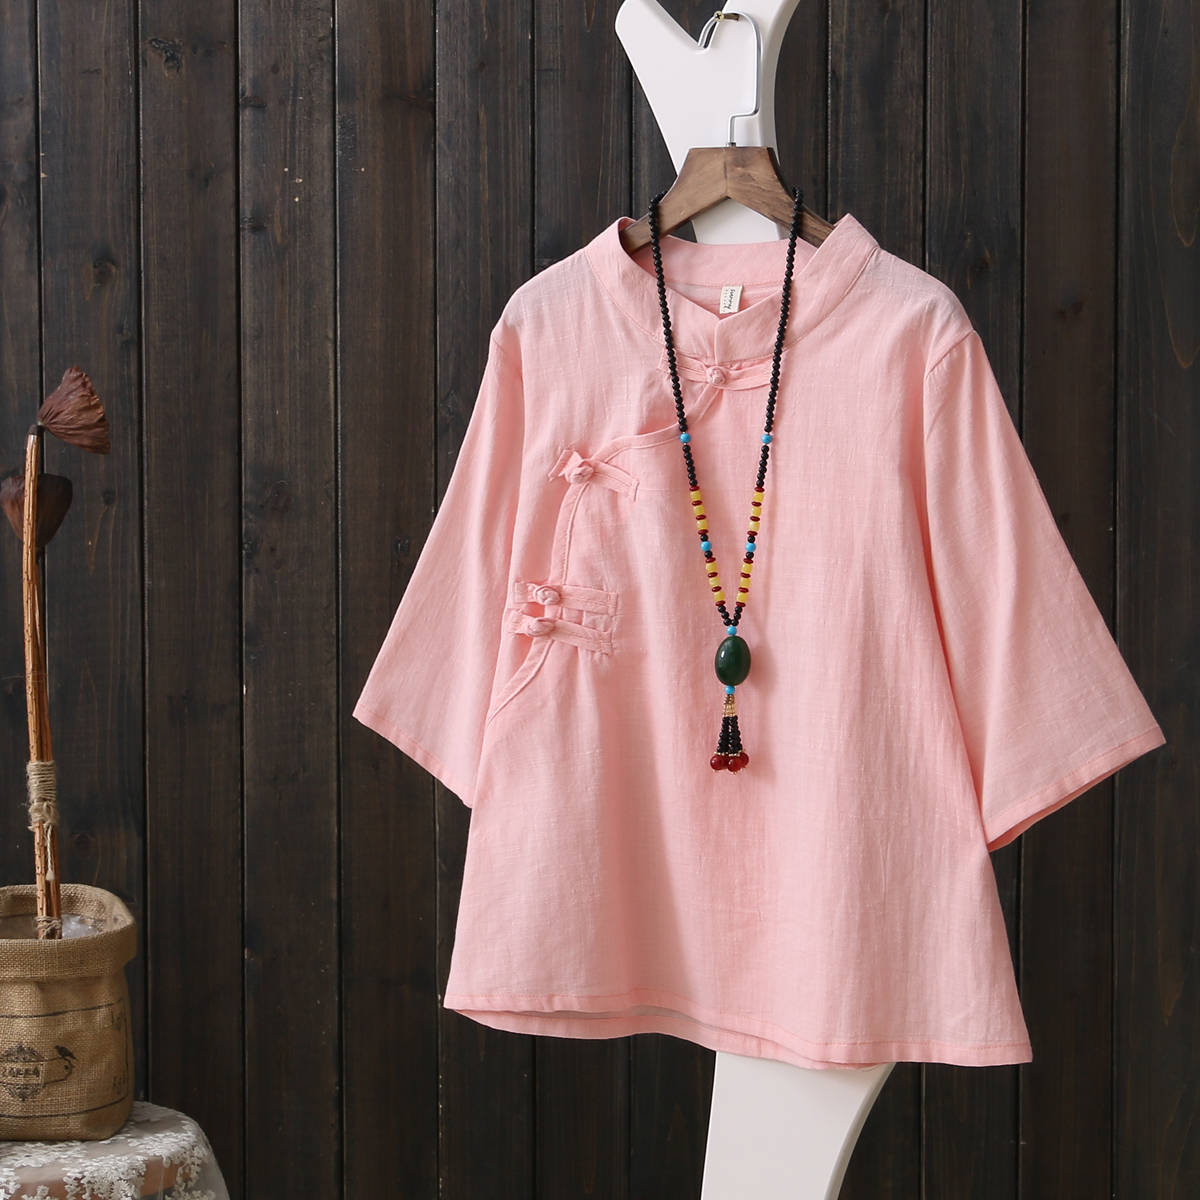 旗袍订制 | 门襟样式篇-服装工艺-服装设计教程-CFW服装设计